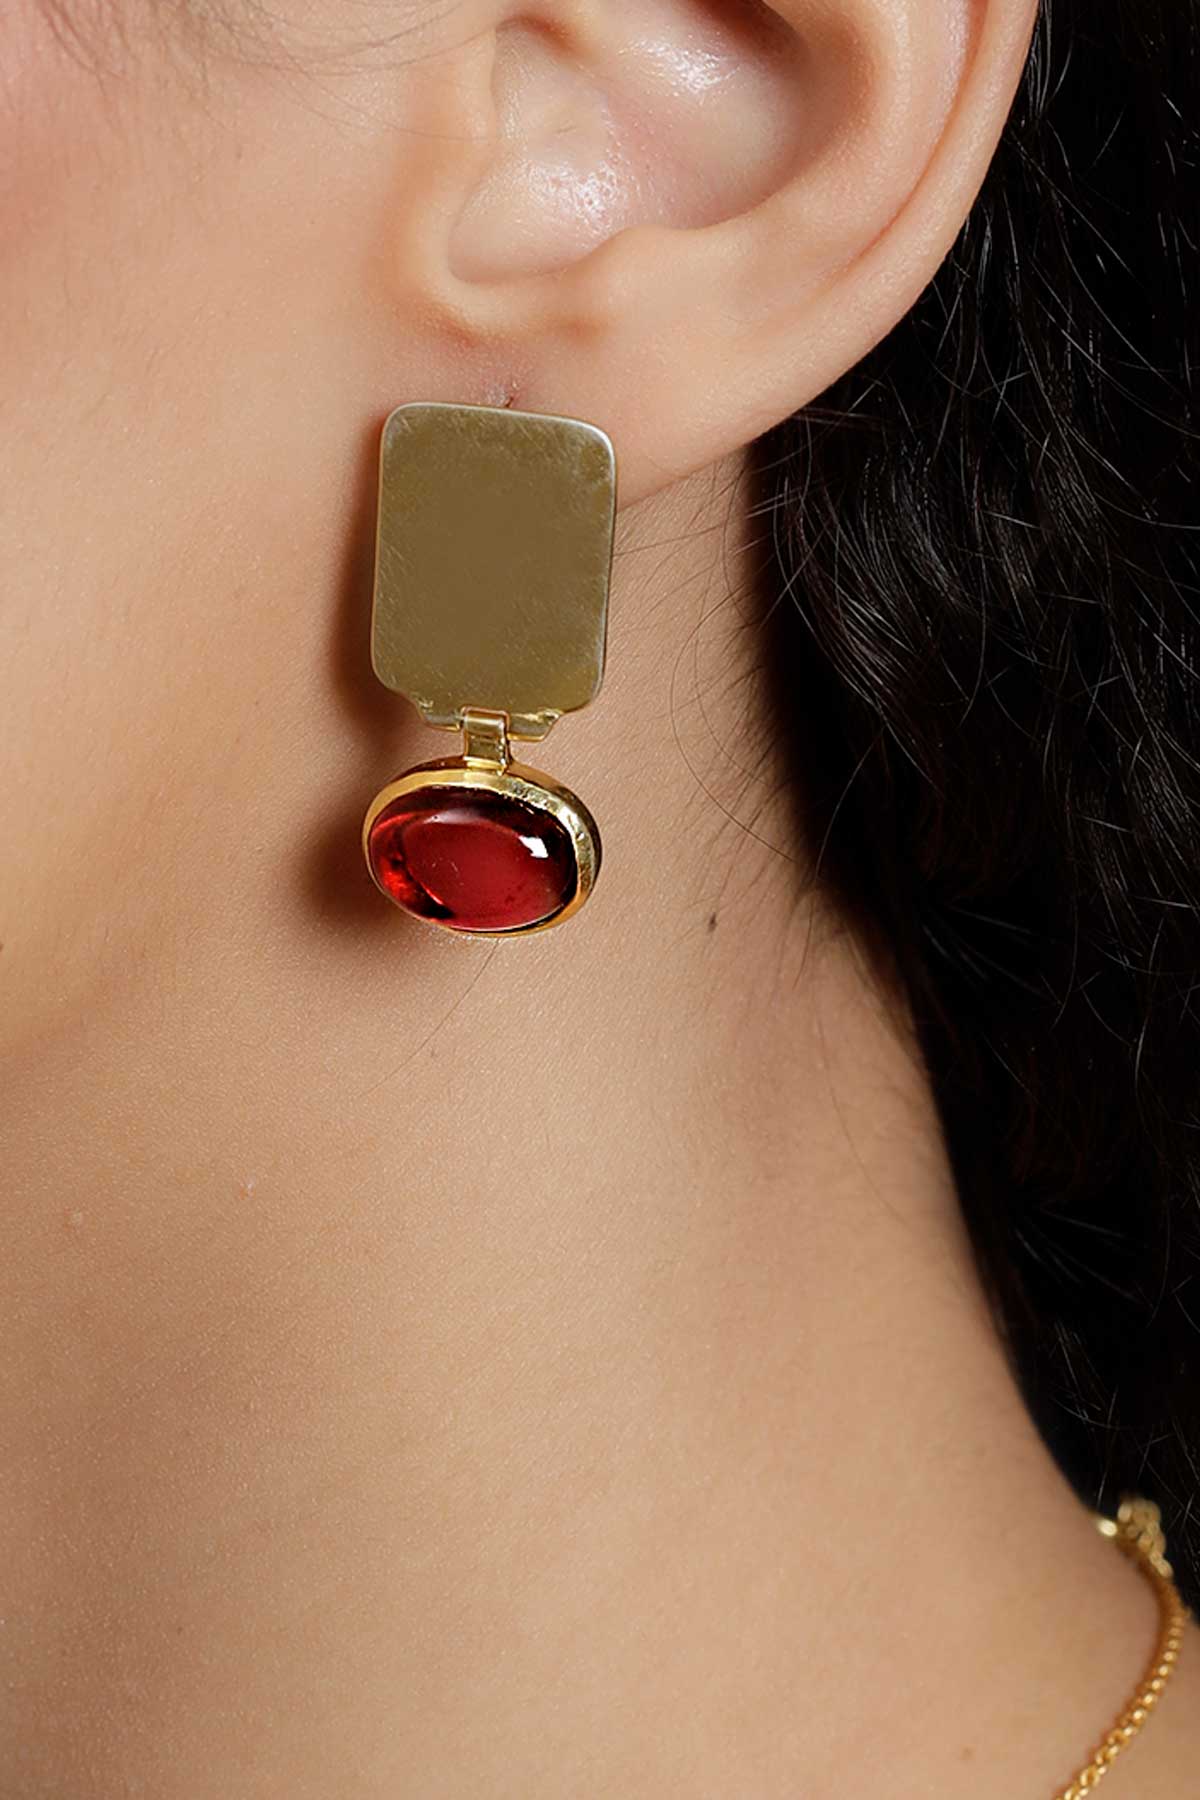 The Red Artemis Earrings